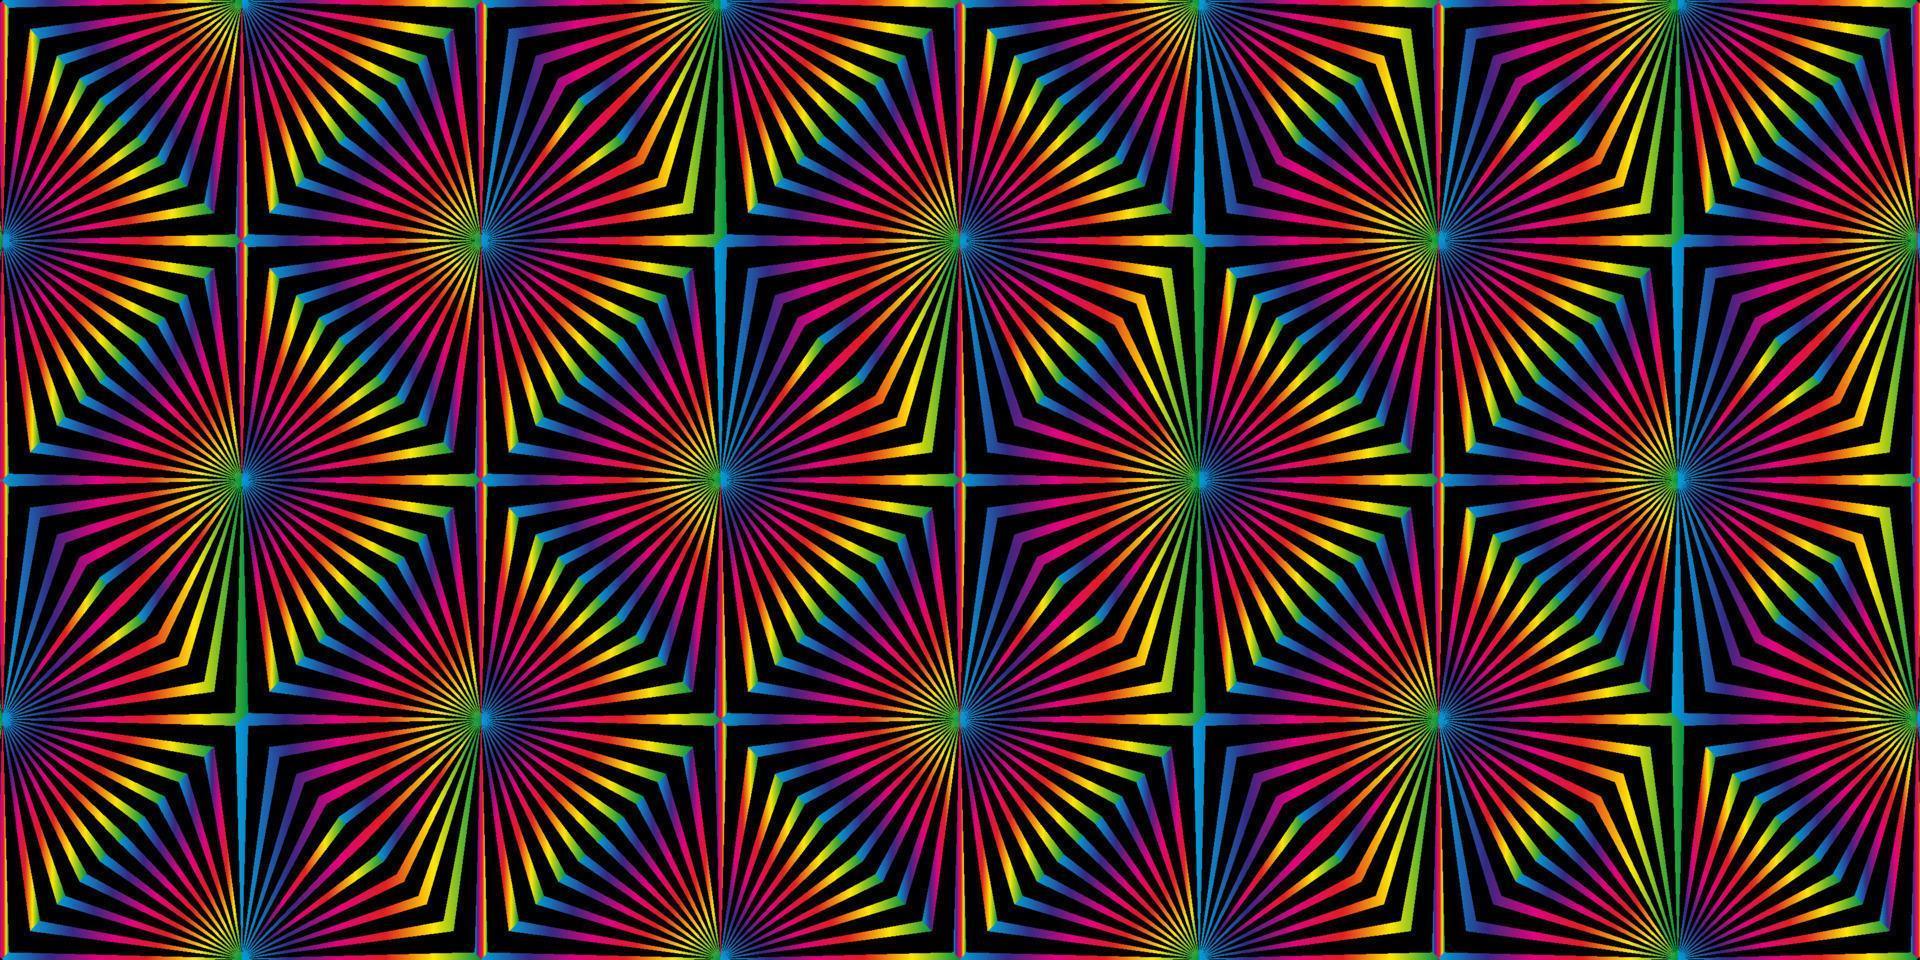 naadloos patroon met zwarte gestreepte lijnen. geometrische textuur met diagonale strepen in kruisvorm. optische illusie-effect, pop-artstijl. abstracte kleurrijke gradiëntachtergrond. trendy ontwerp vector